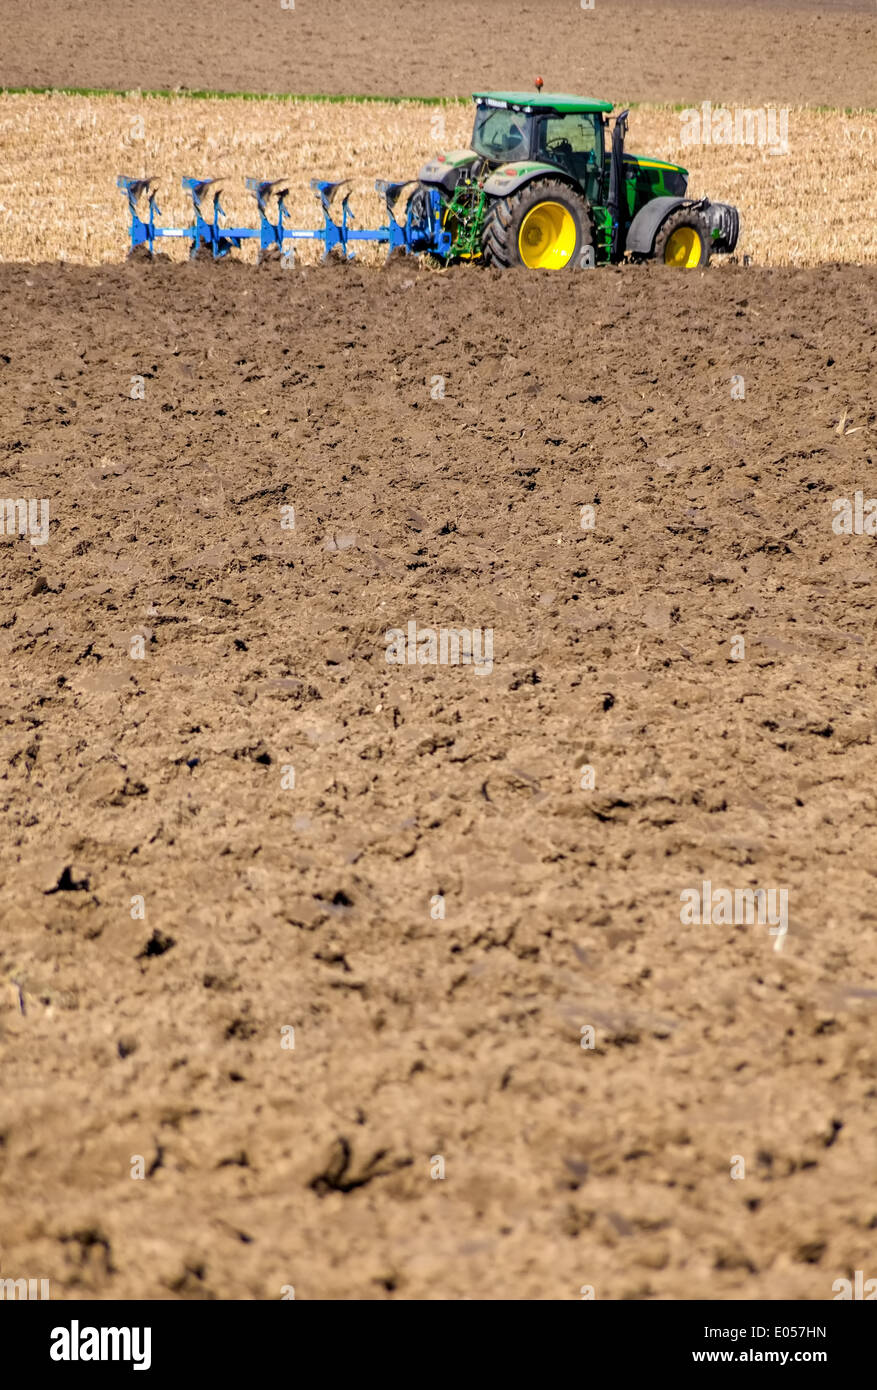 A tractor on a field plough with. Text clearance in the foreground, Ein Traktor auf einem Feld beim pfluegen. Textfreiraum im Vo Stock Photo